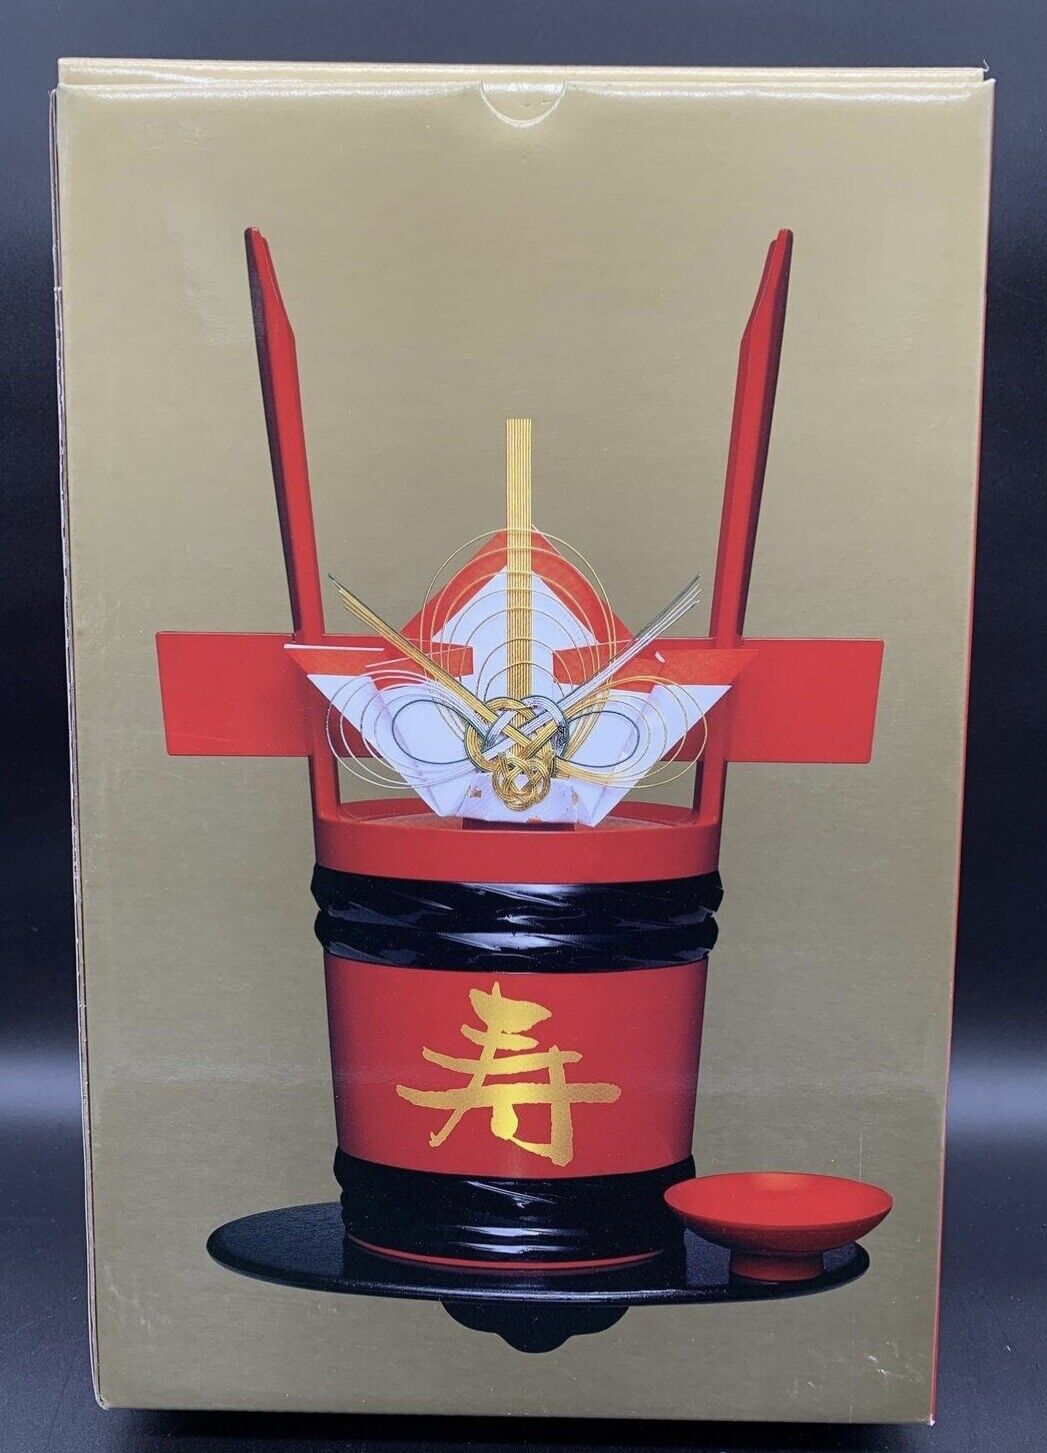 New Vintage Japanese Kikukawa Sake Carrying Bucket w/Ceremonial Accessories 